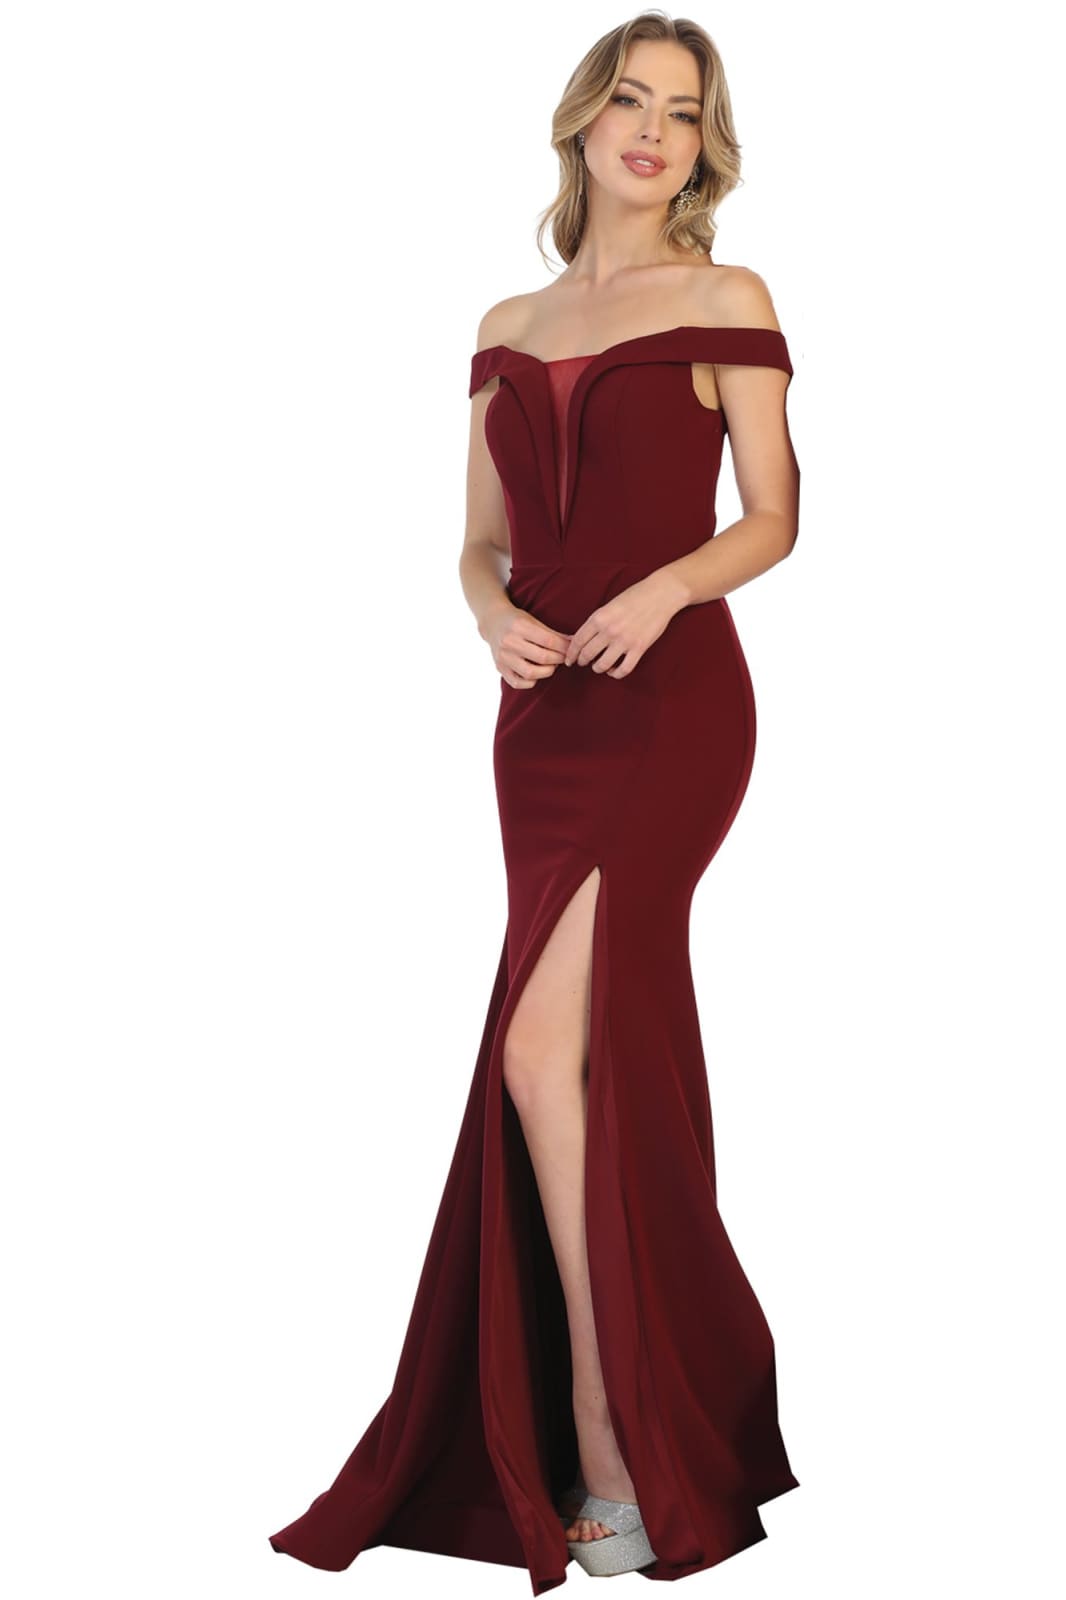 La Merchandise LA1748 Sexy Long Off the Shoulder Stretchy Prom Dress - BURGUNDY - LA Merchandise